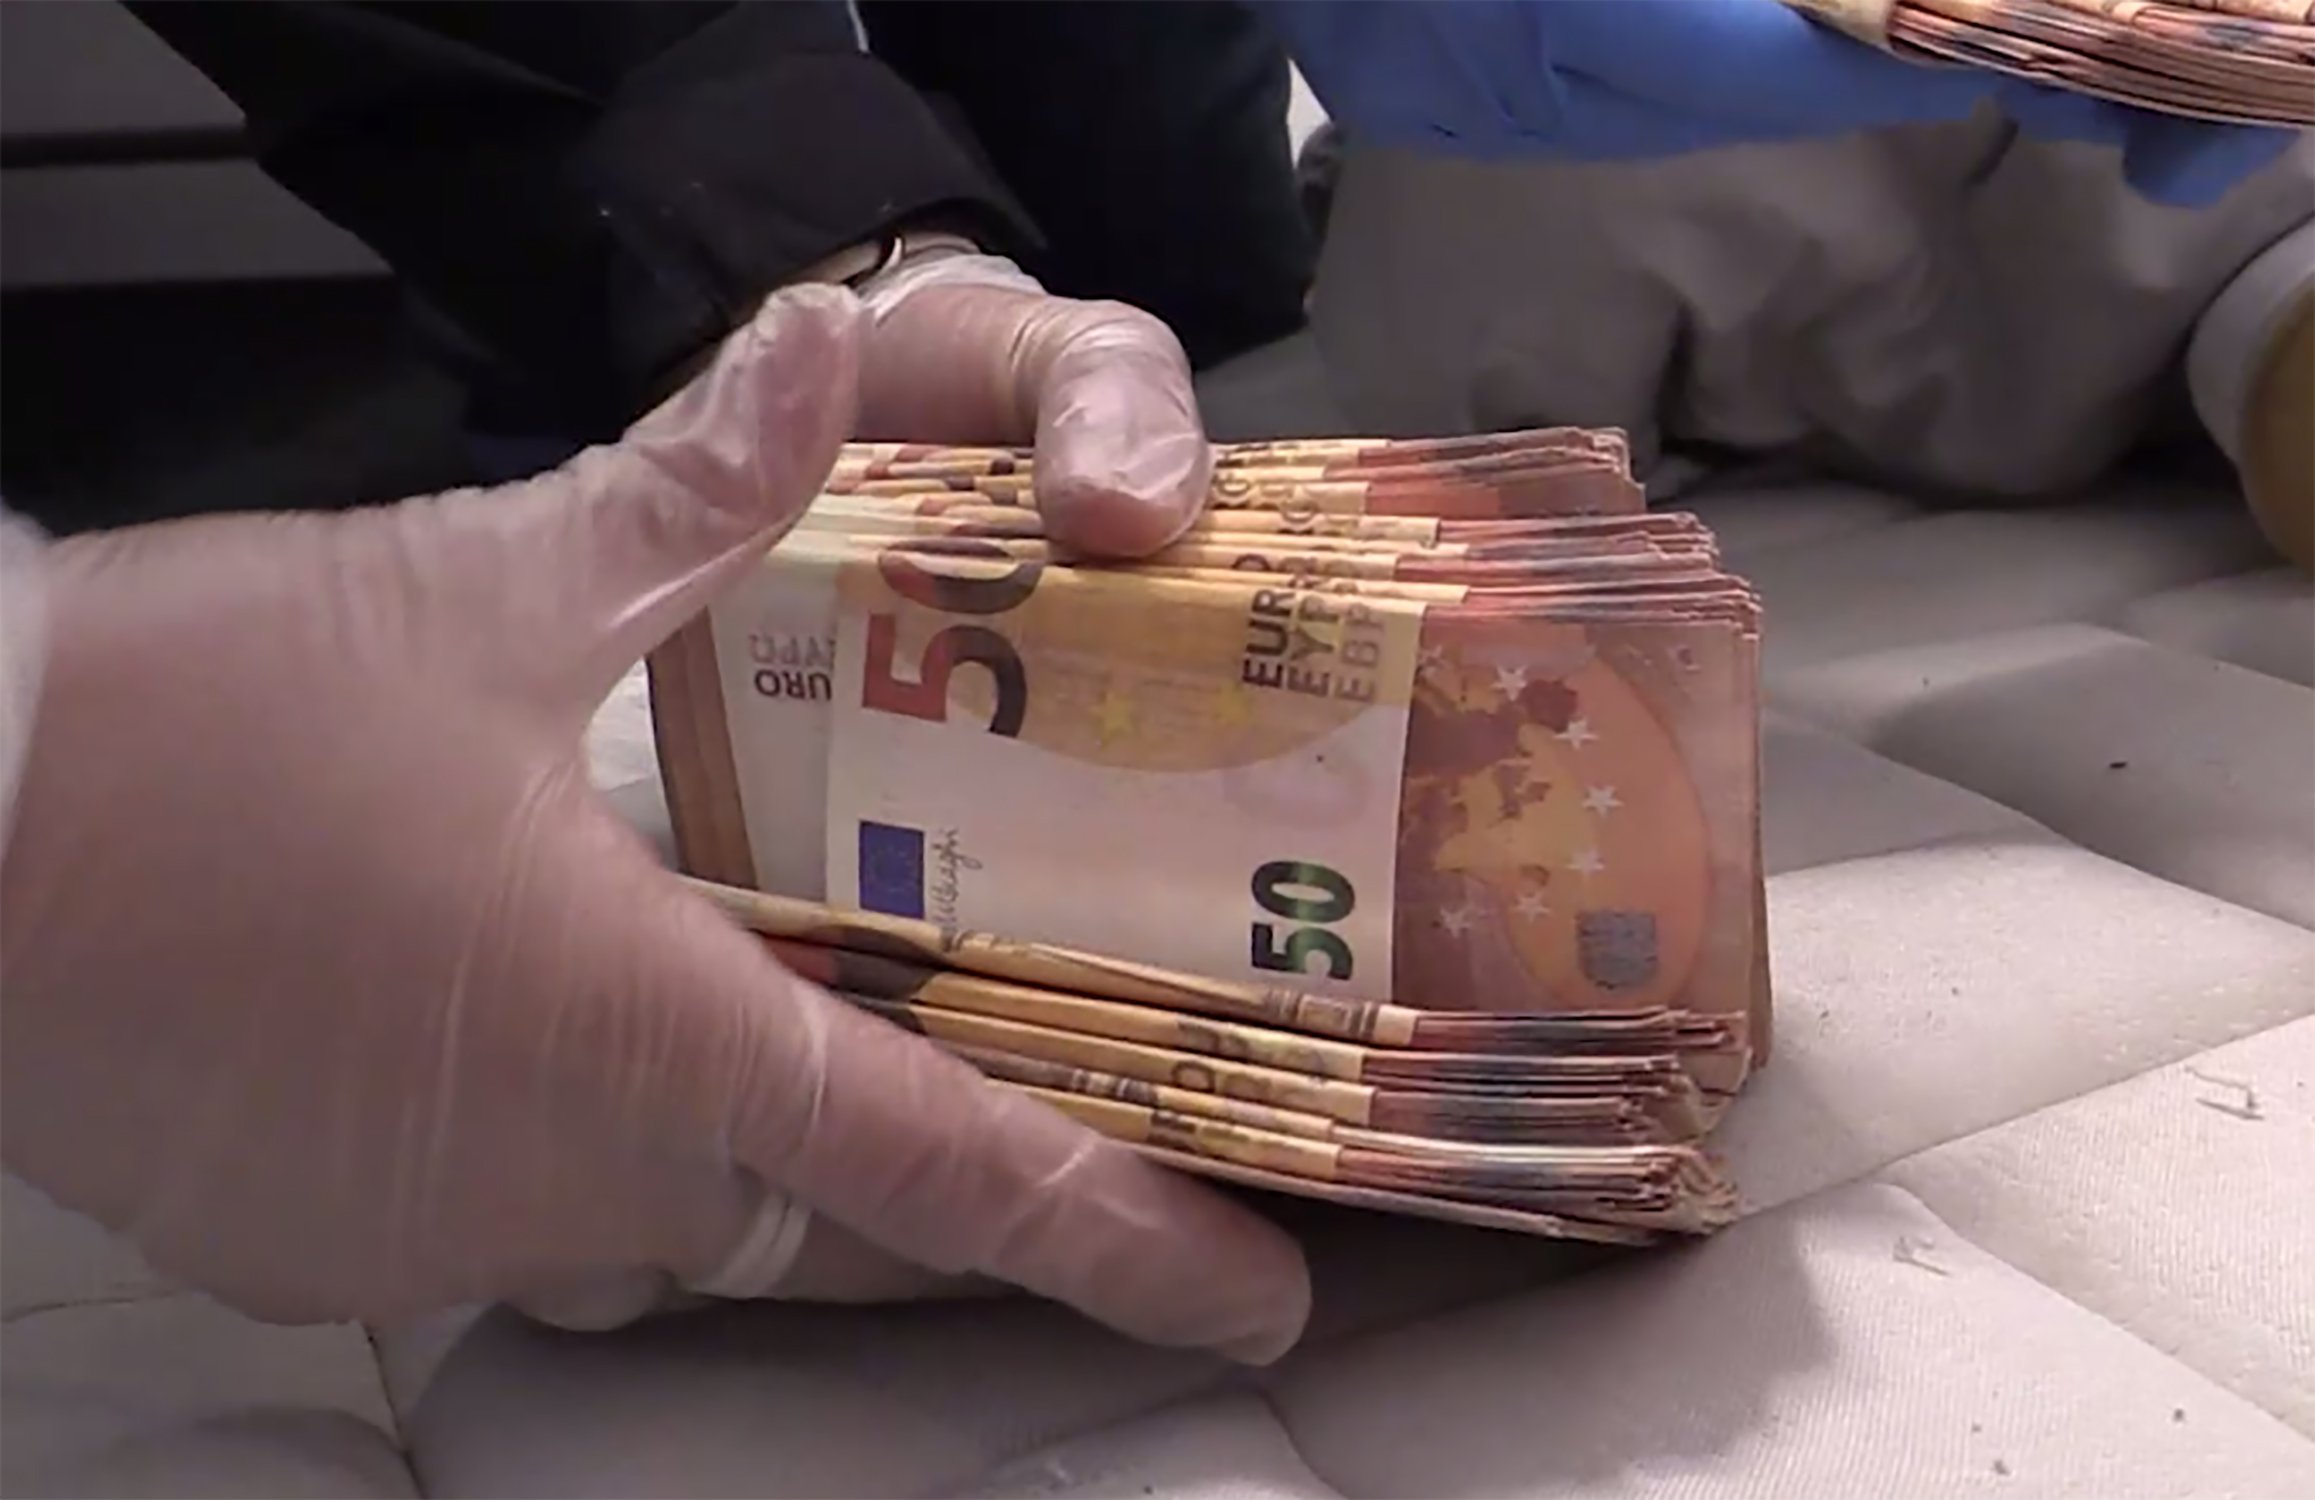 Cuáles son los billetes falsos que más circulan: de 20 y de 50 euros, Economía nacional e internacional